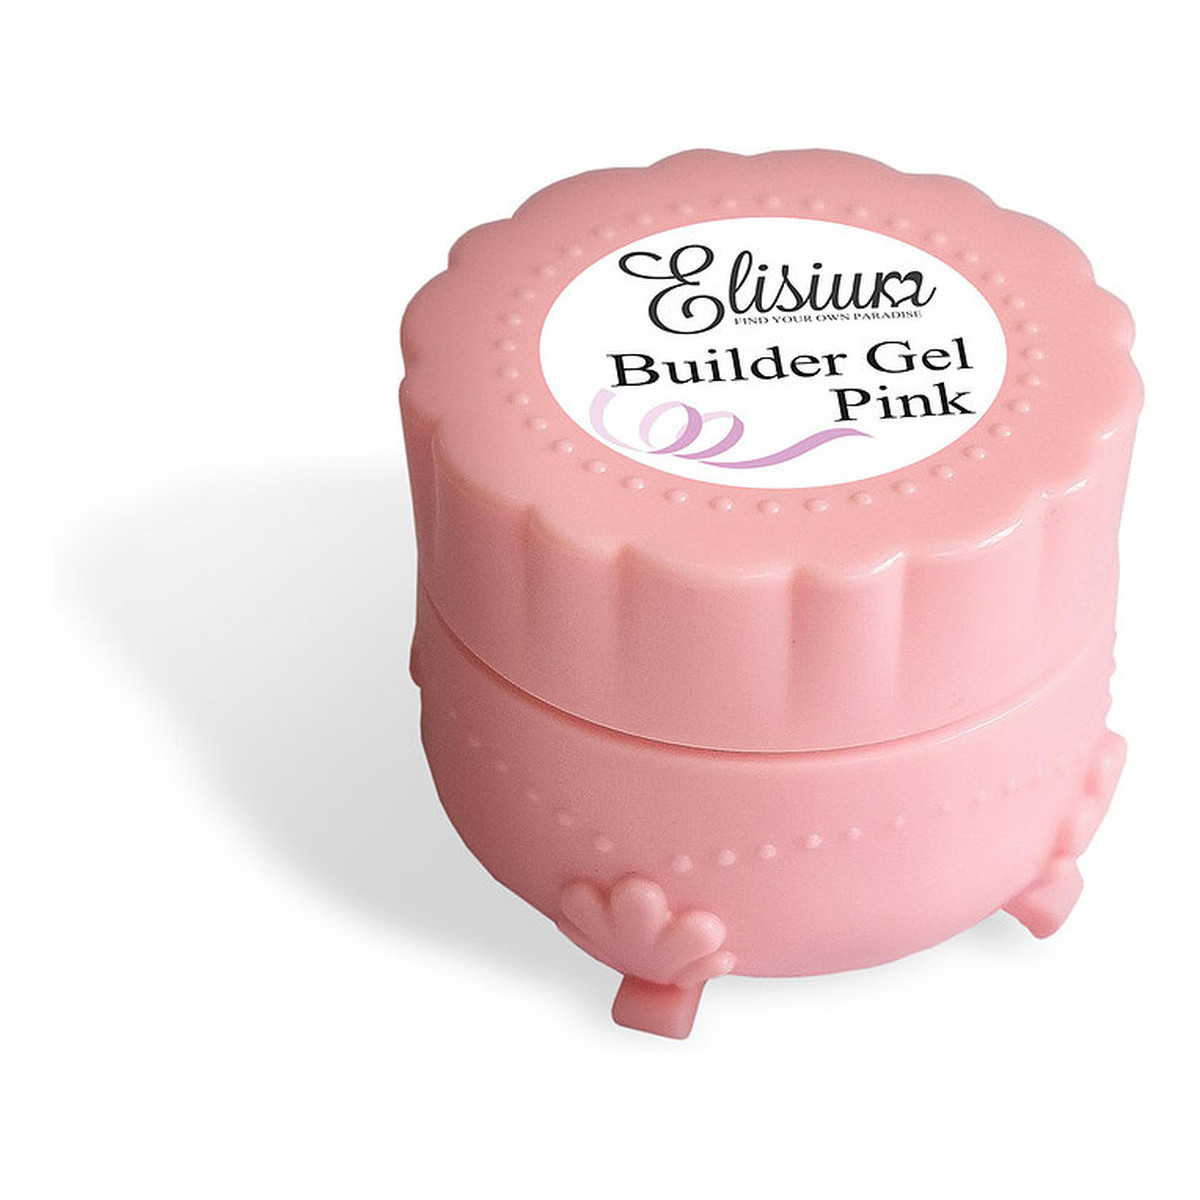 Elisium Builder Gel żel do budowania paznokci żelowych Pink 8ml